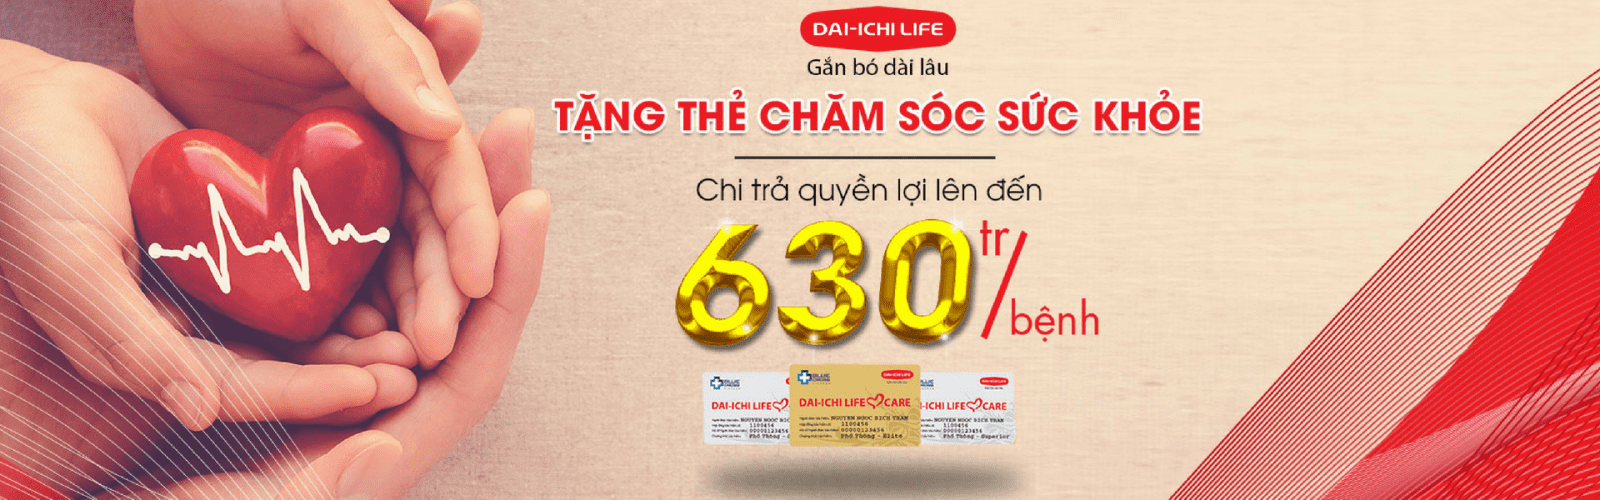 Bảo hiểm An nhàn Hưu trí Dai-ichi Life Việt Nam mang đến cho khách hàng nhiều quyền lợi